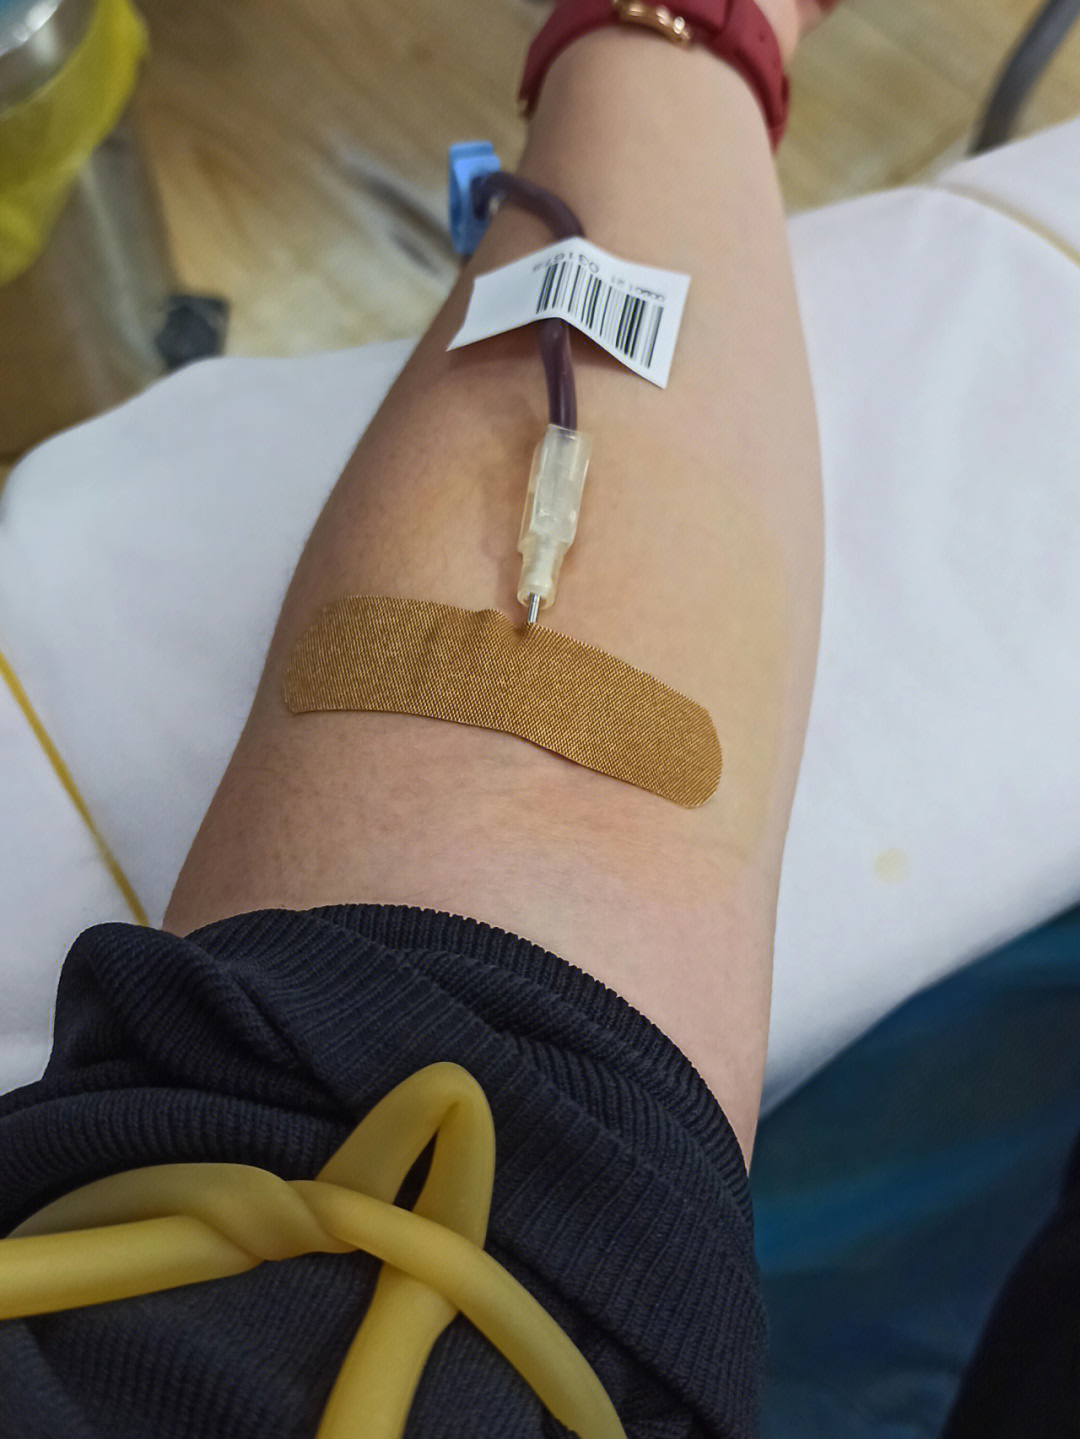 献血的针管多粗图片